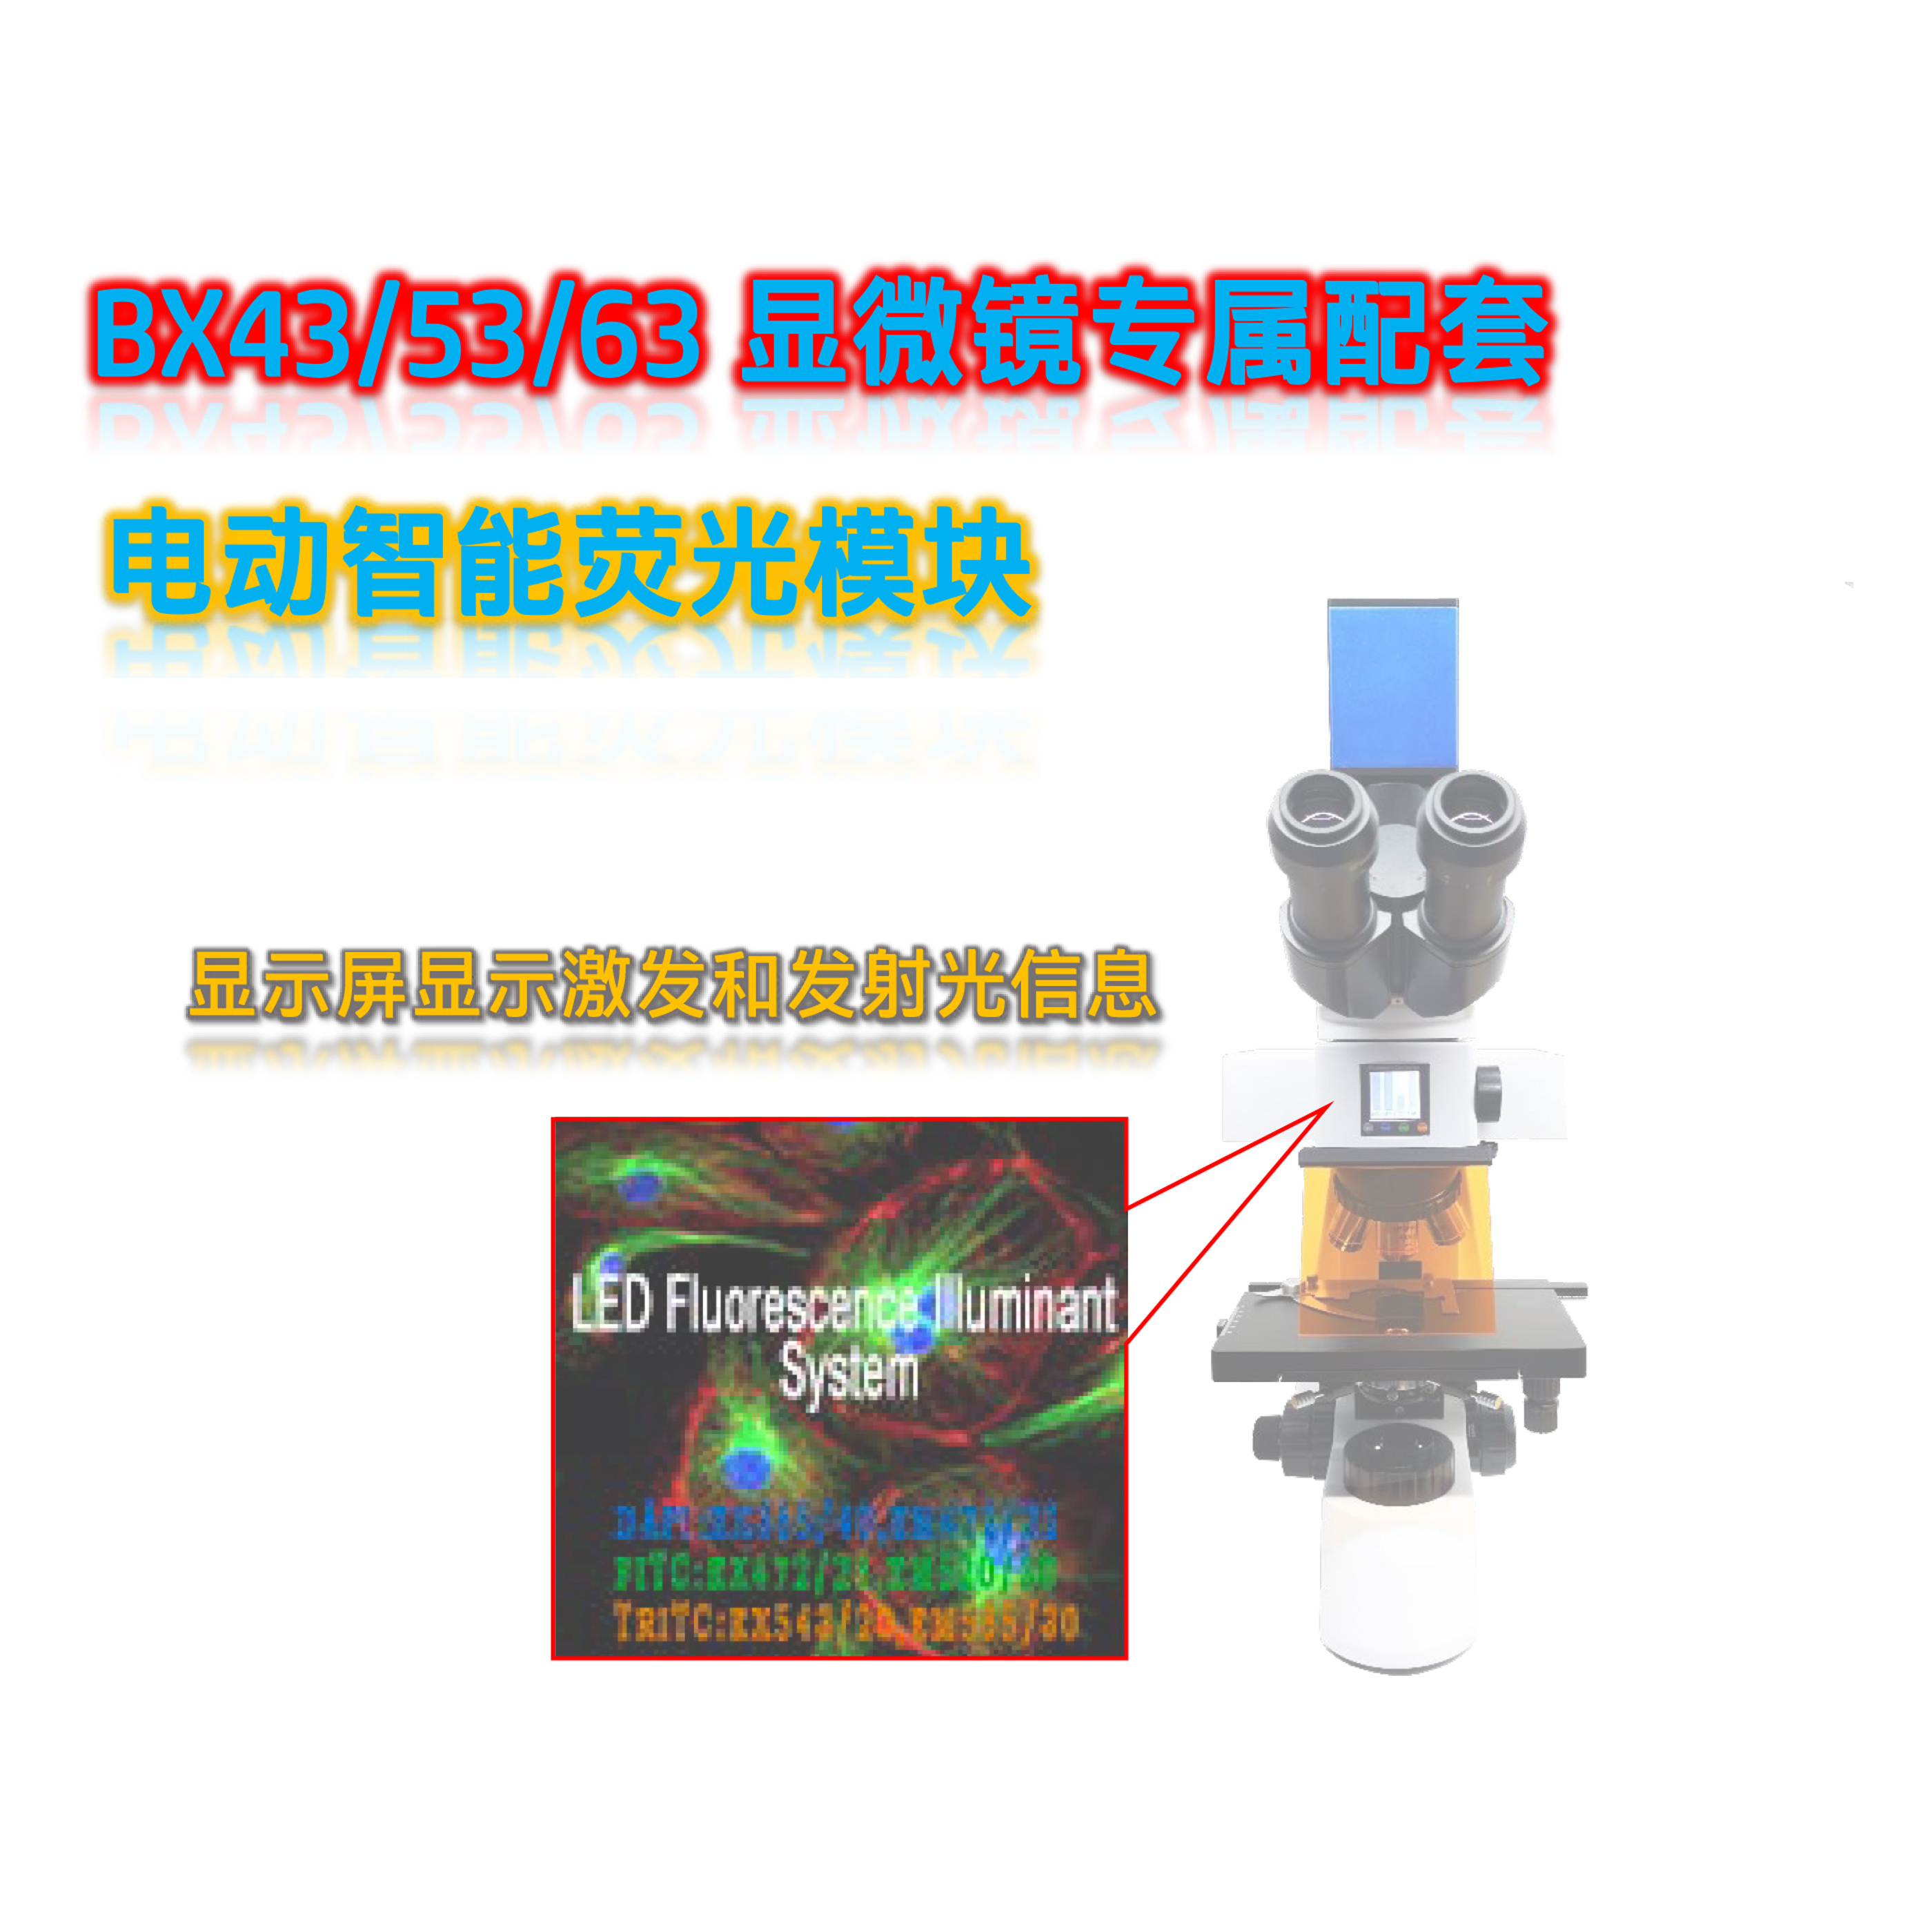 奥林巴斯BX43/53显微镜配套荧光附件正置荧光模块BX-B-E